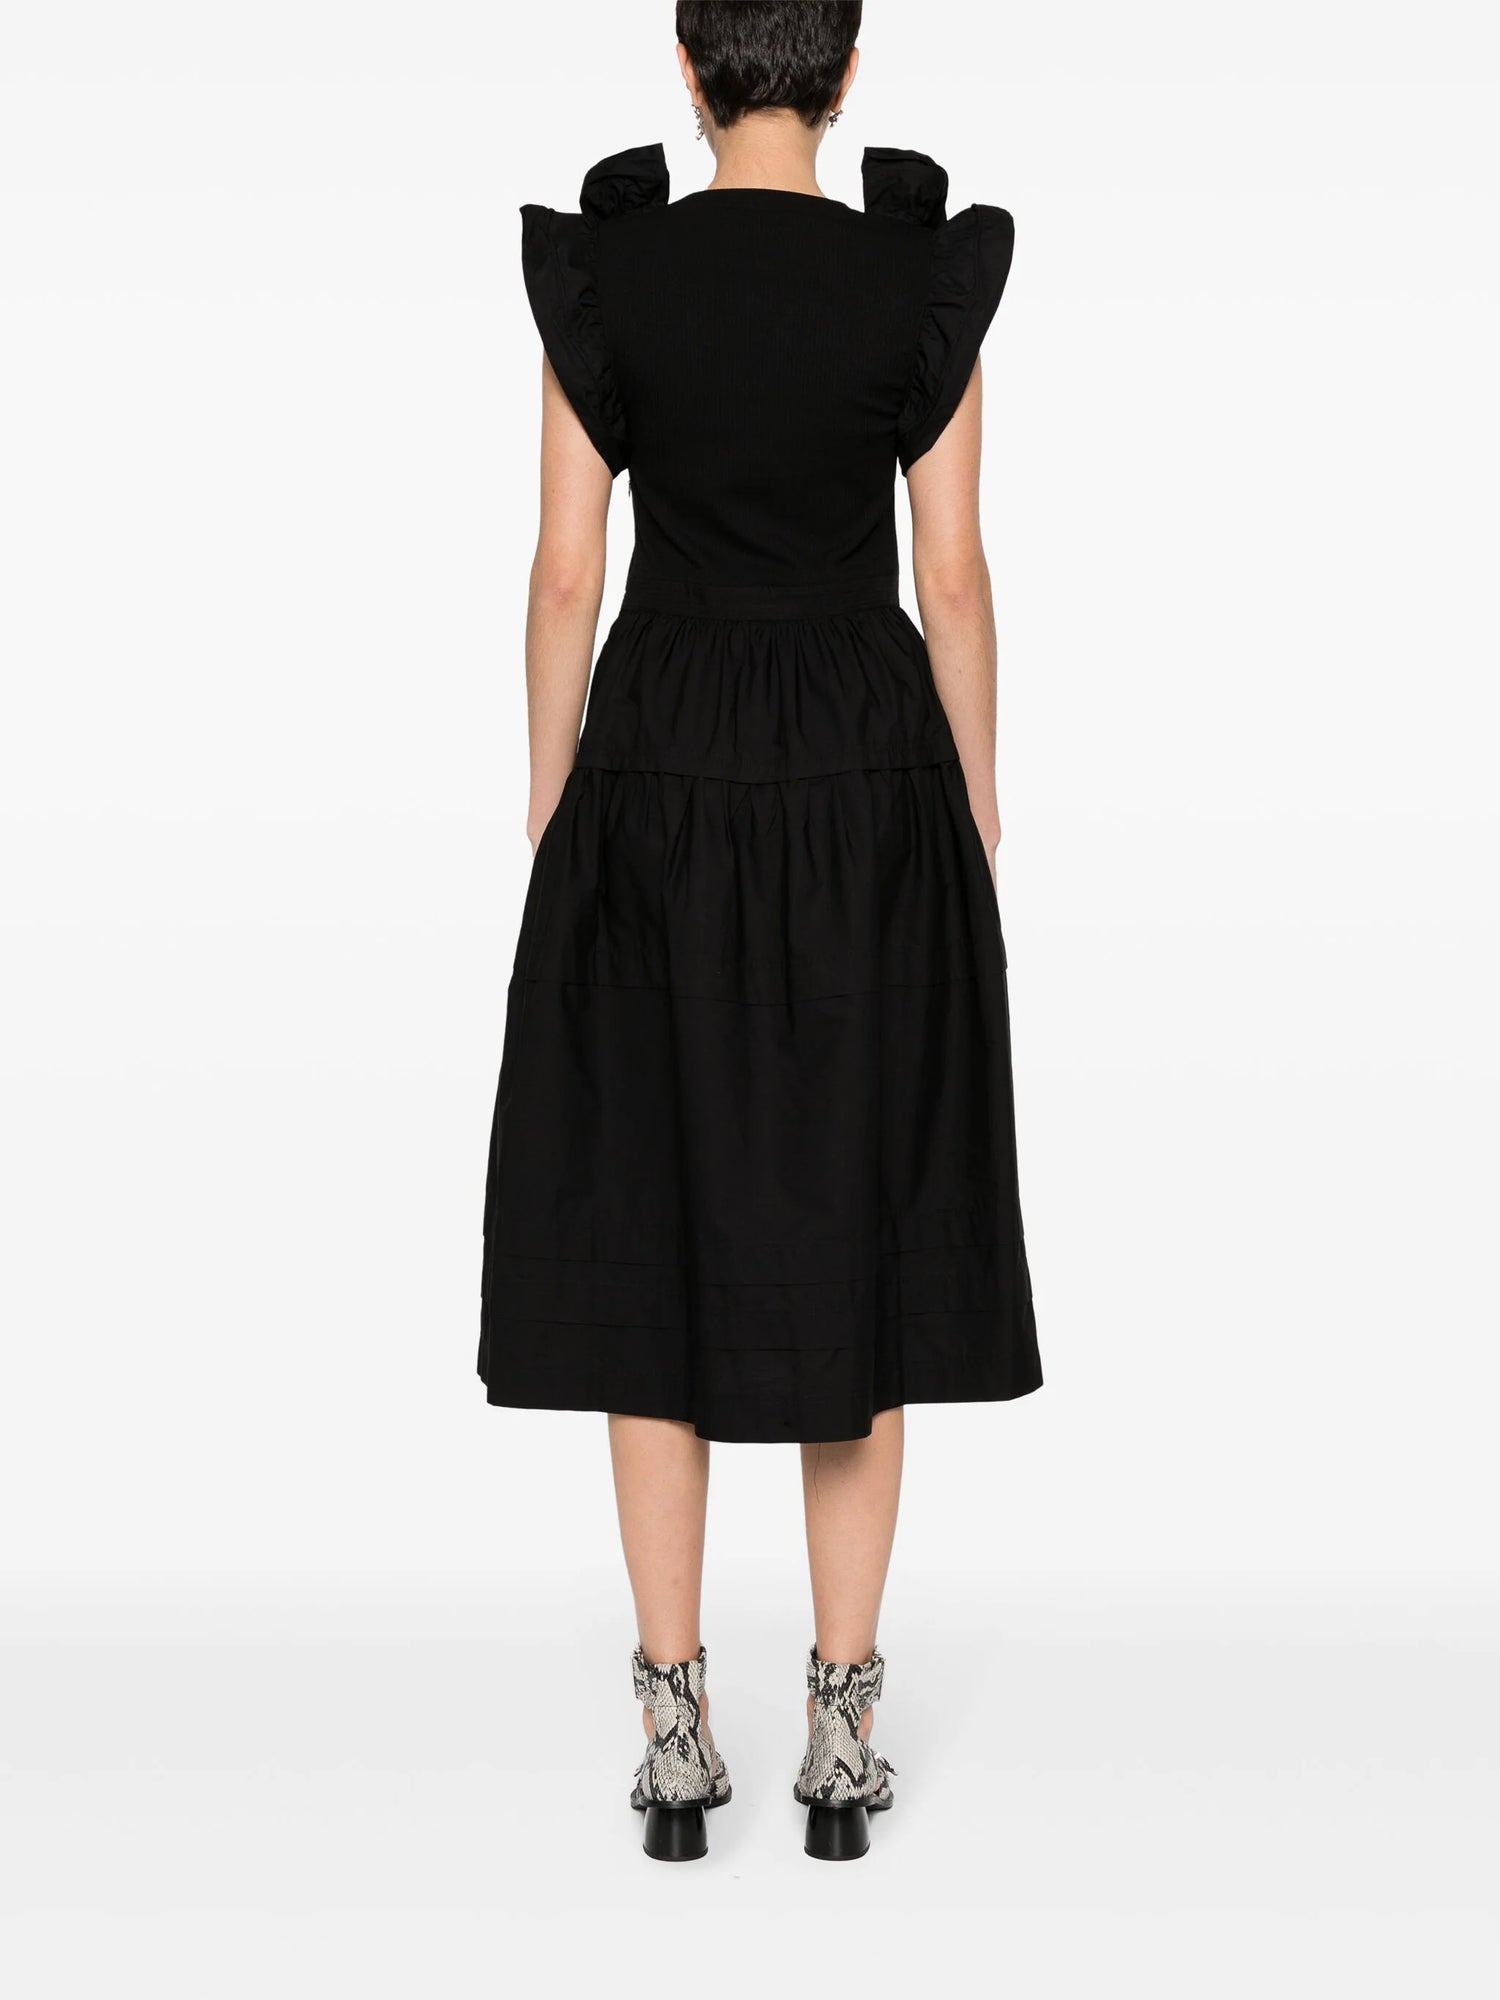 Francine Dress, black